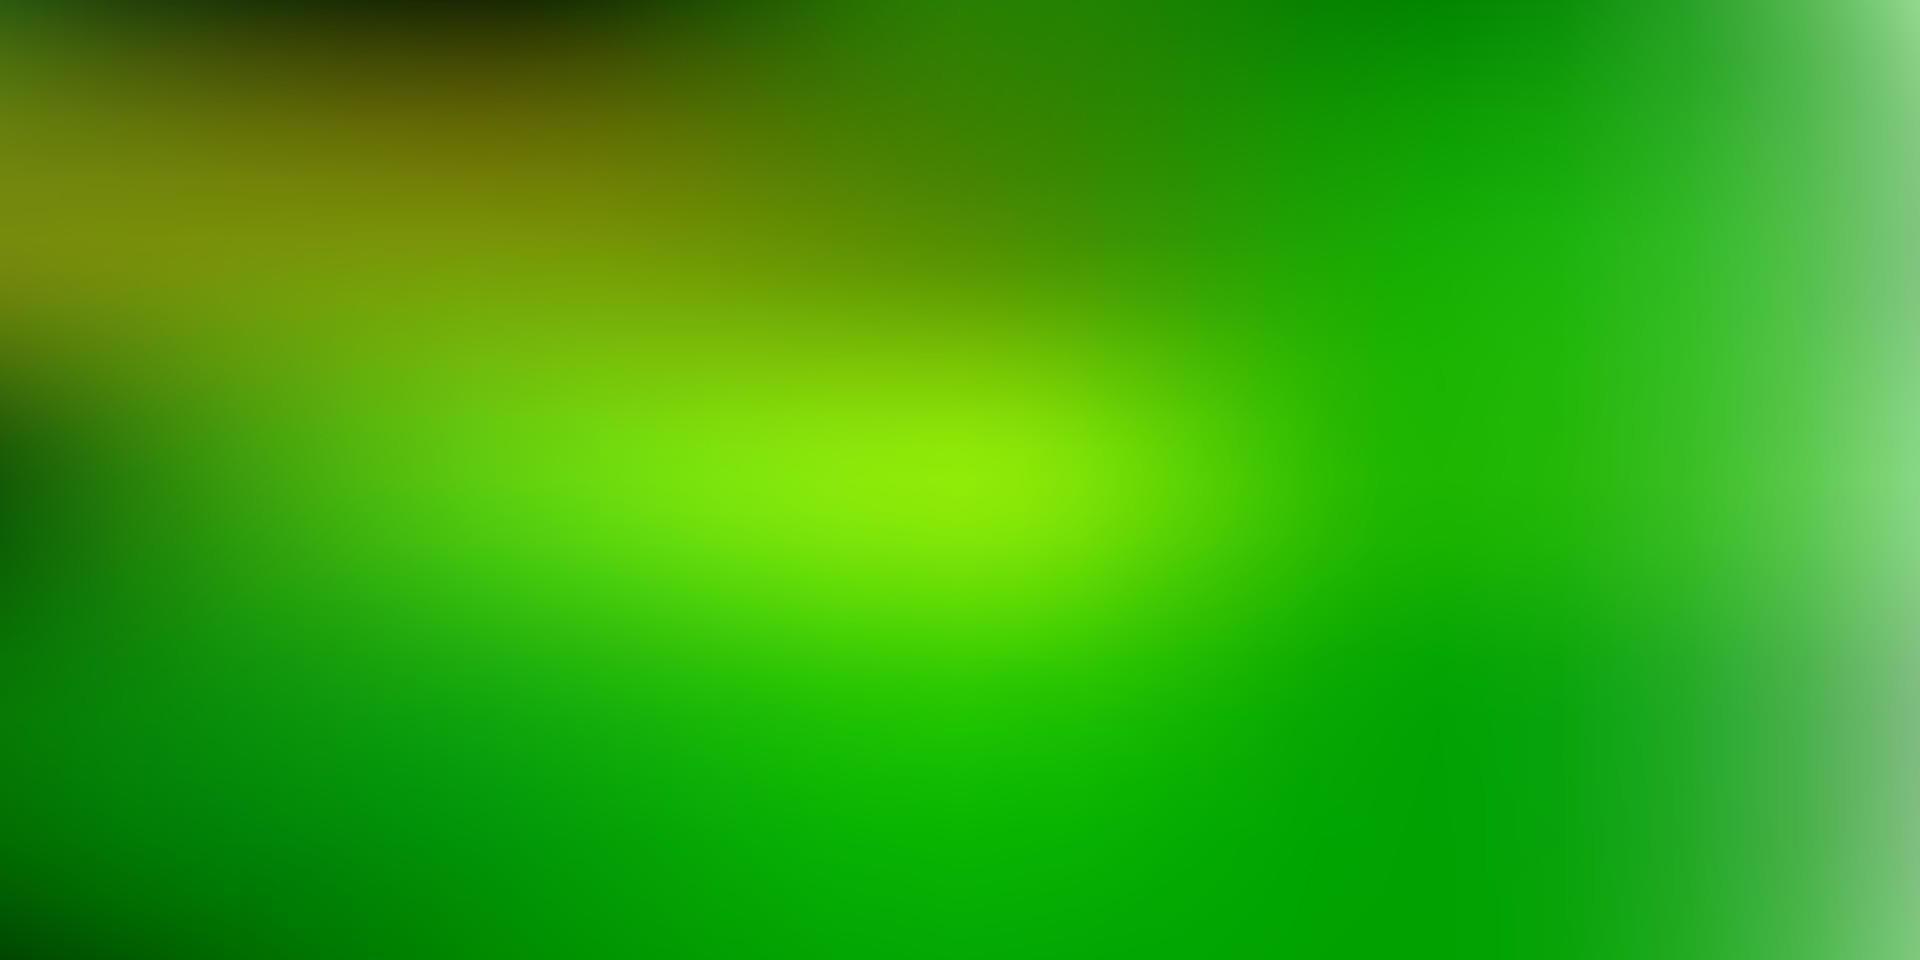 Fondo de desenfoque abstracto de vector verde claro, amarillo.